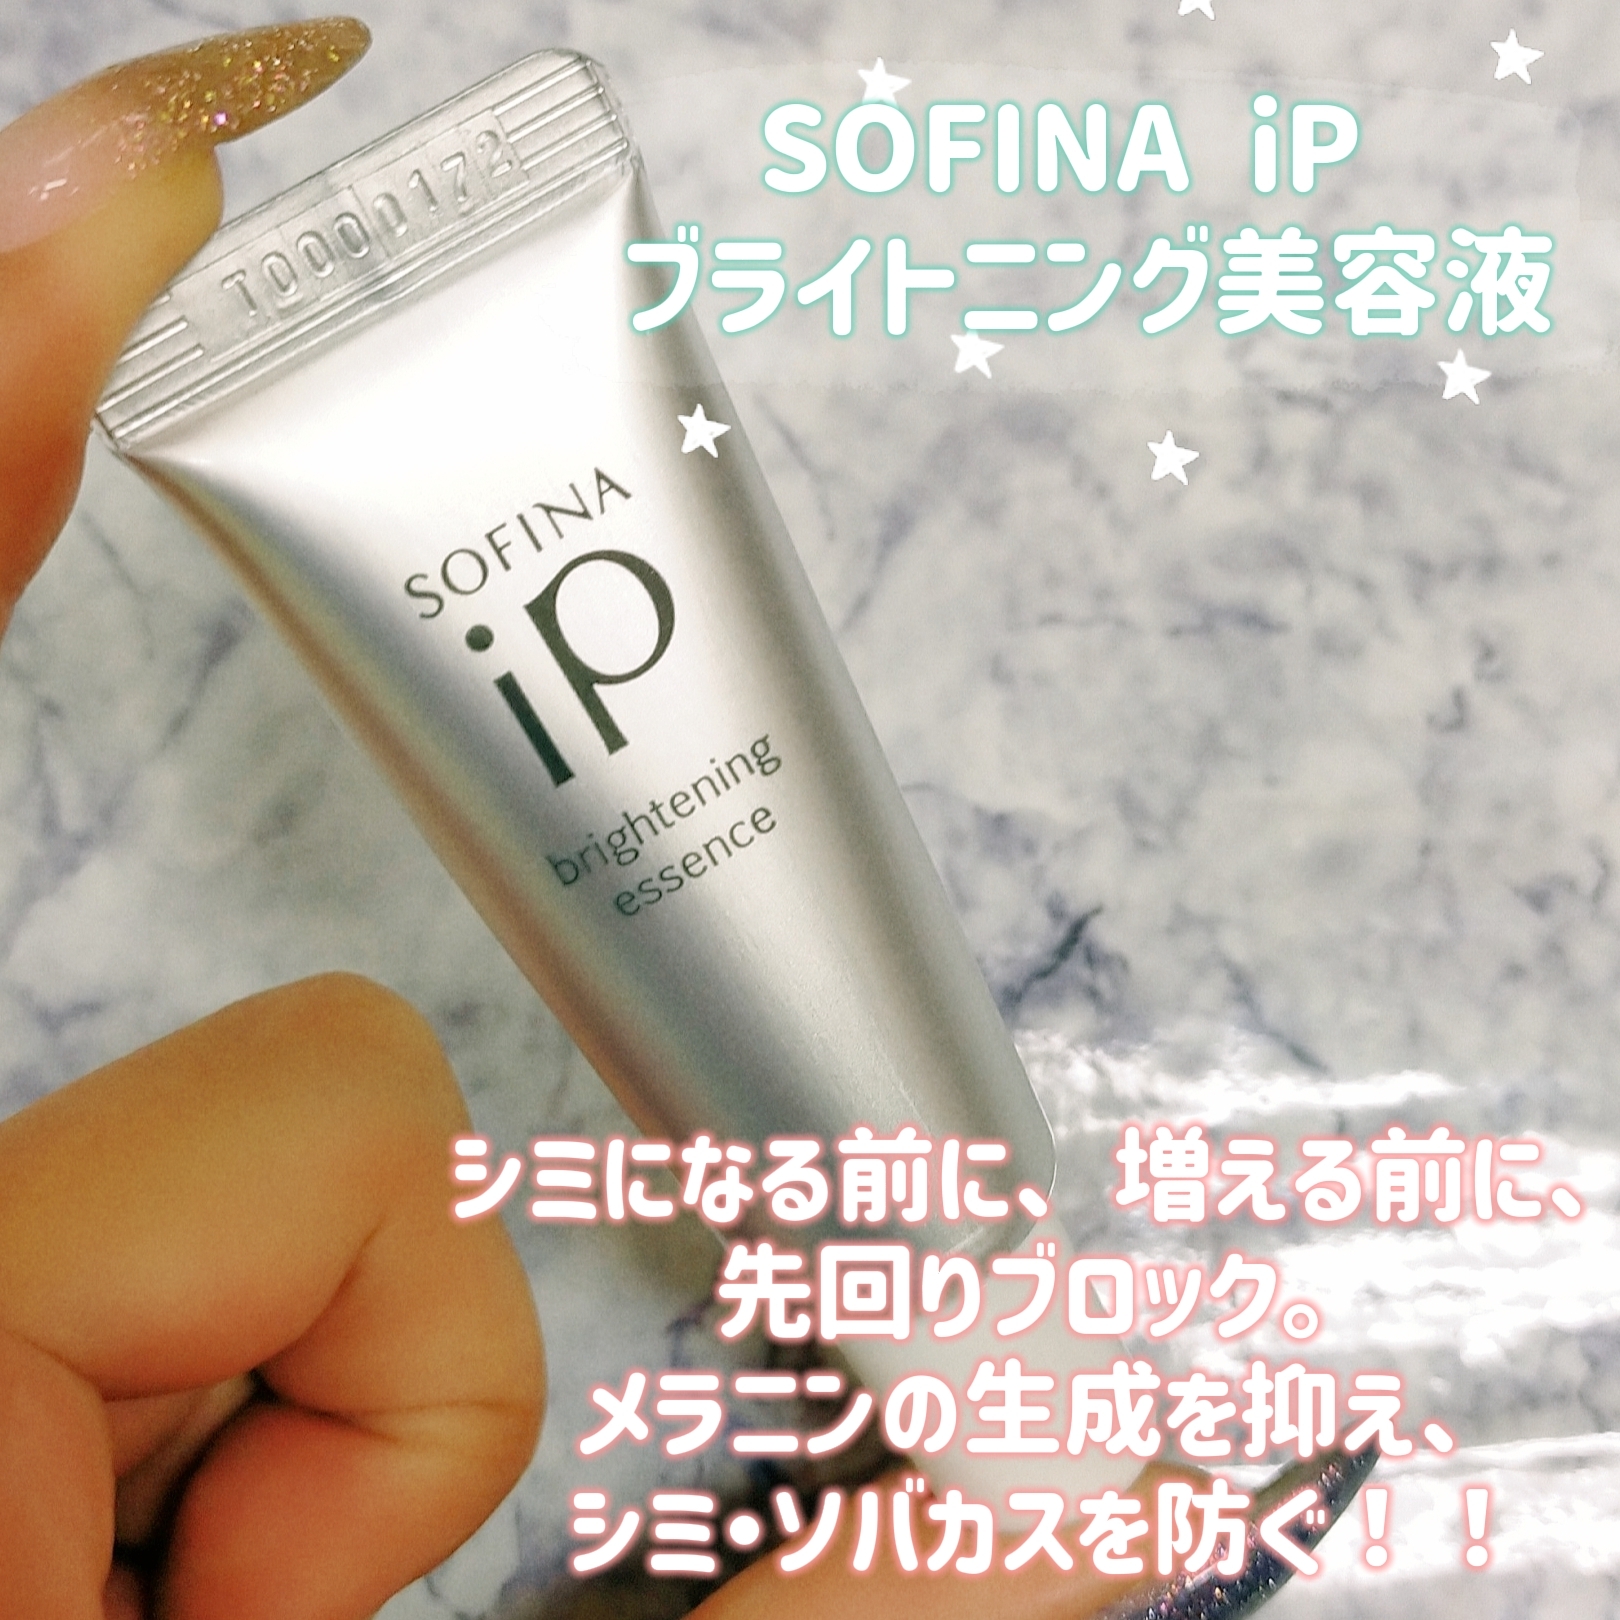 SOFINA iP(ソフィーナ アイピー)ブライトニング美容液を使ったみこさんのクチコミ画像1